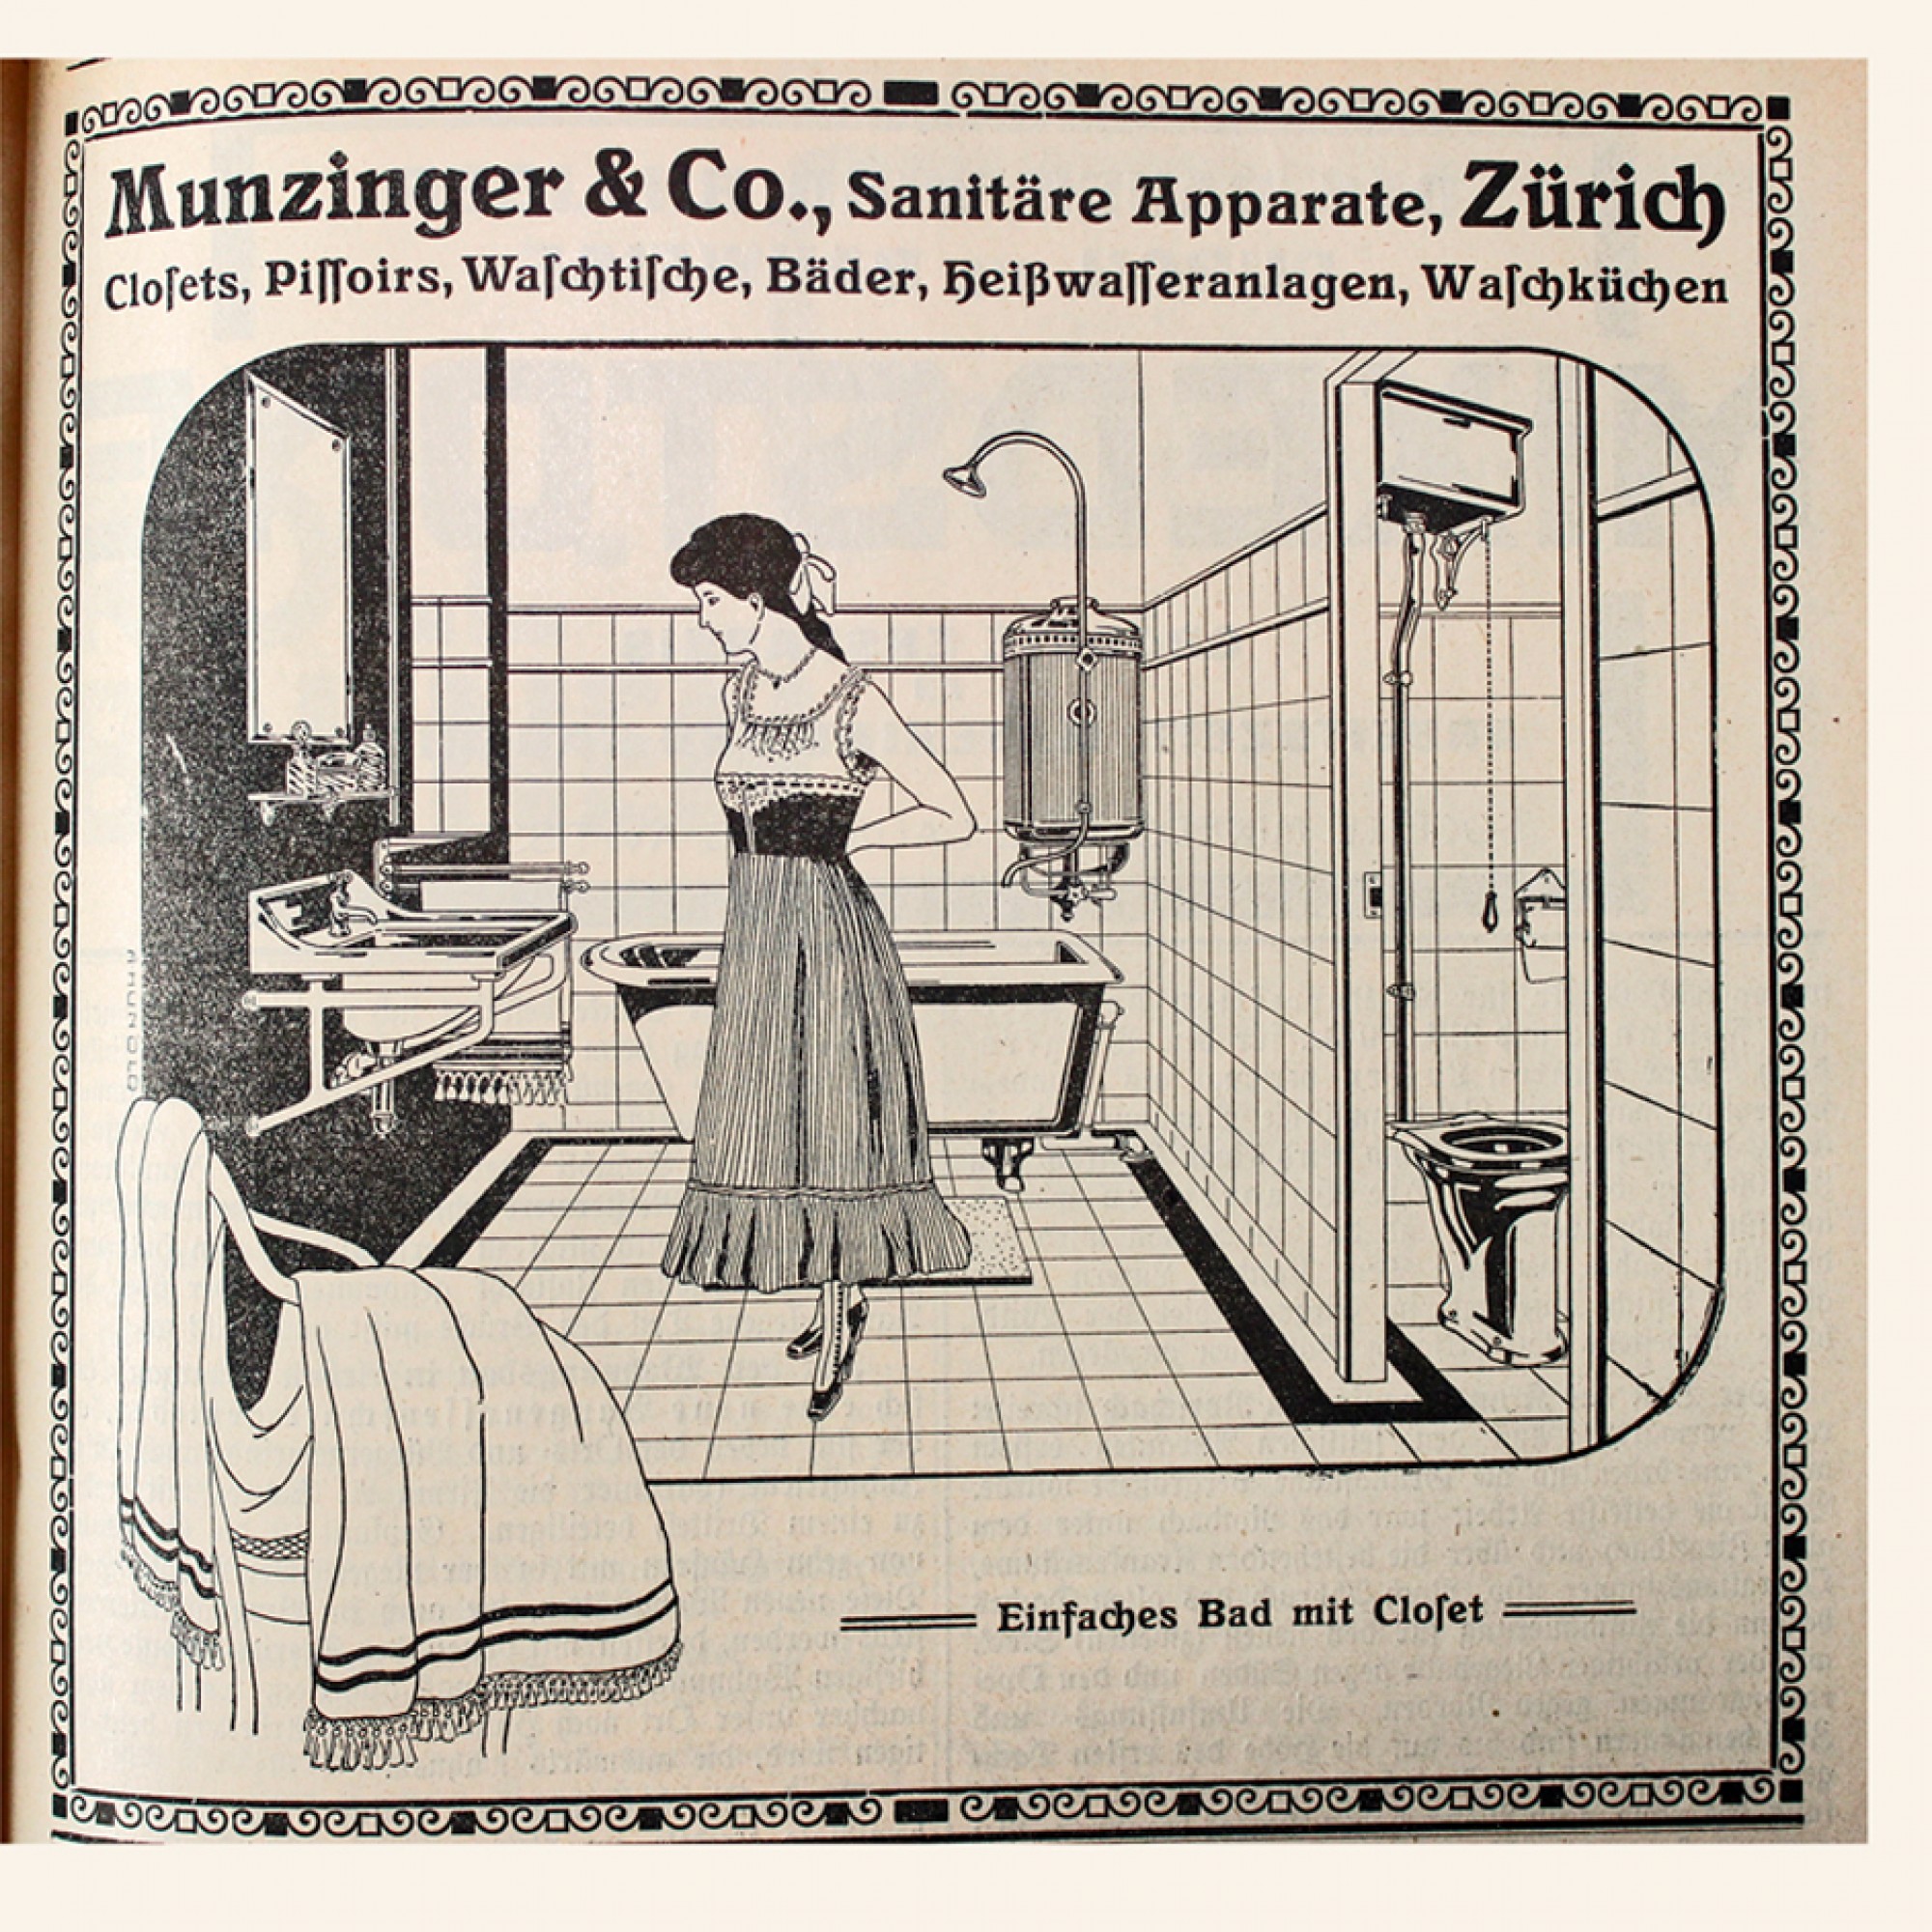 Munzinger & Co. aus Zürich setzte auf fantasievolle Illustrationen mit gekonnter Inszenierung ihrer sanitären Anlagen. Hier sehen Sie die Kreation «einfaches Bad mit Closet».